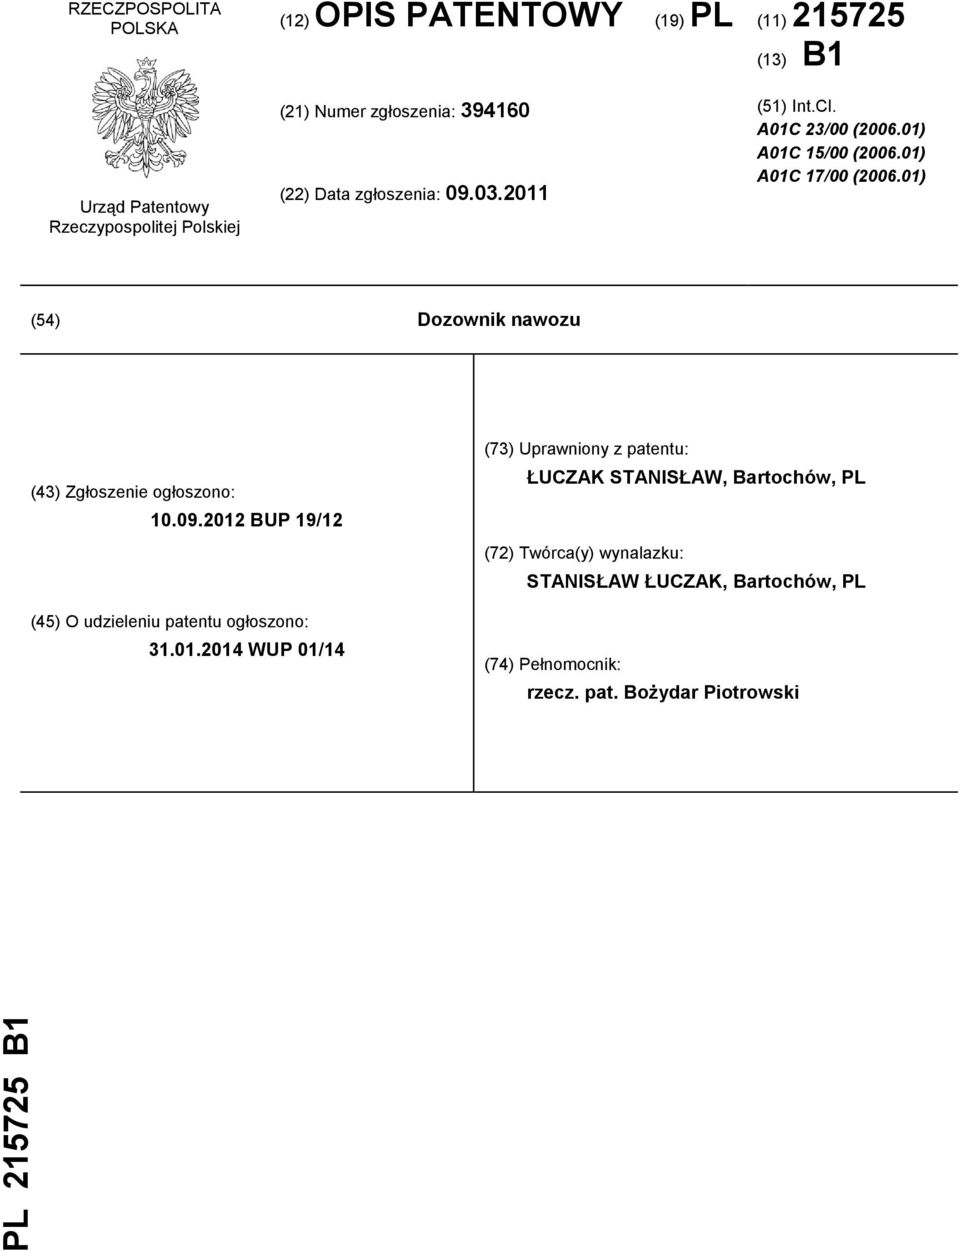 01) (54) Dozownik nawozu (43) Zgłoszenie ogłoszono: 10.09.2012 BUP 19/12 (45) O udzieleniu patentu ogłoszono: 31.01.2014 WUP 01/14 (73)